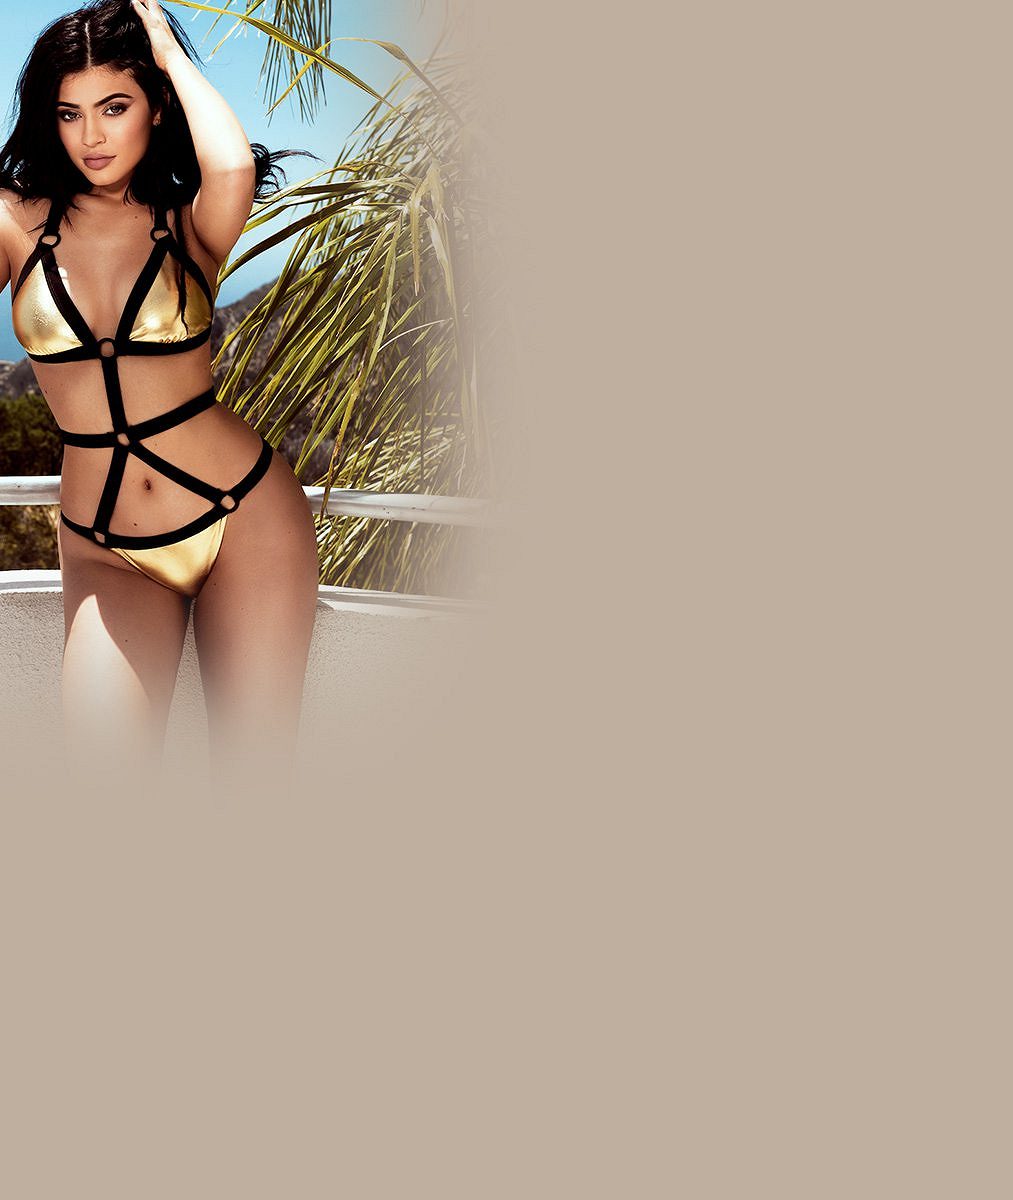 Kylie Jenner pózovala v objetí partnera úplně nahá: Hanbatým snímkem naznačila spolupráci s pánským časopisem